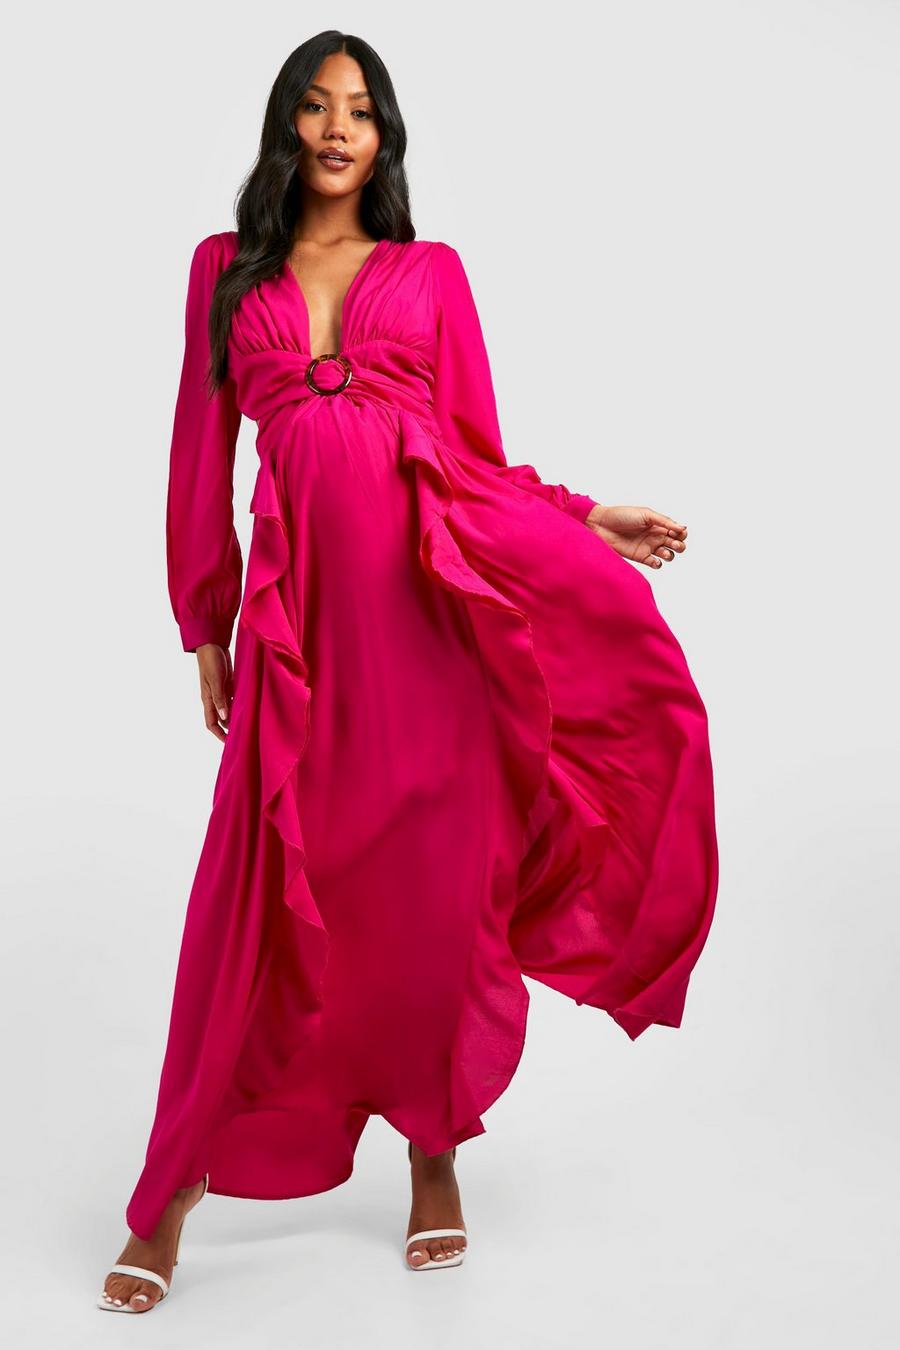 Hot pink Lång gravidklänning med cut-out